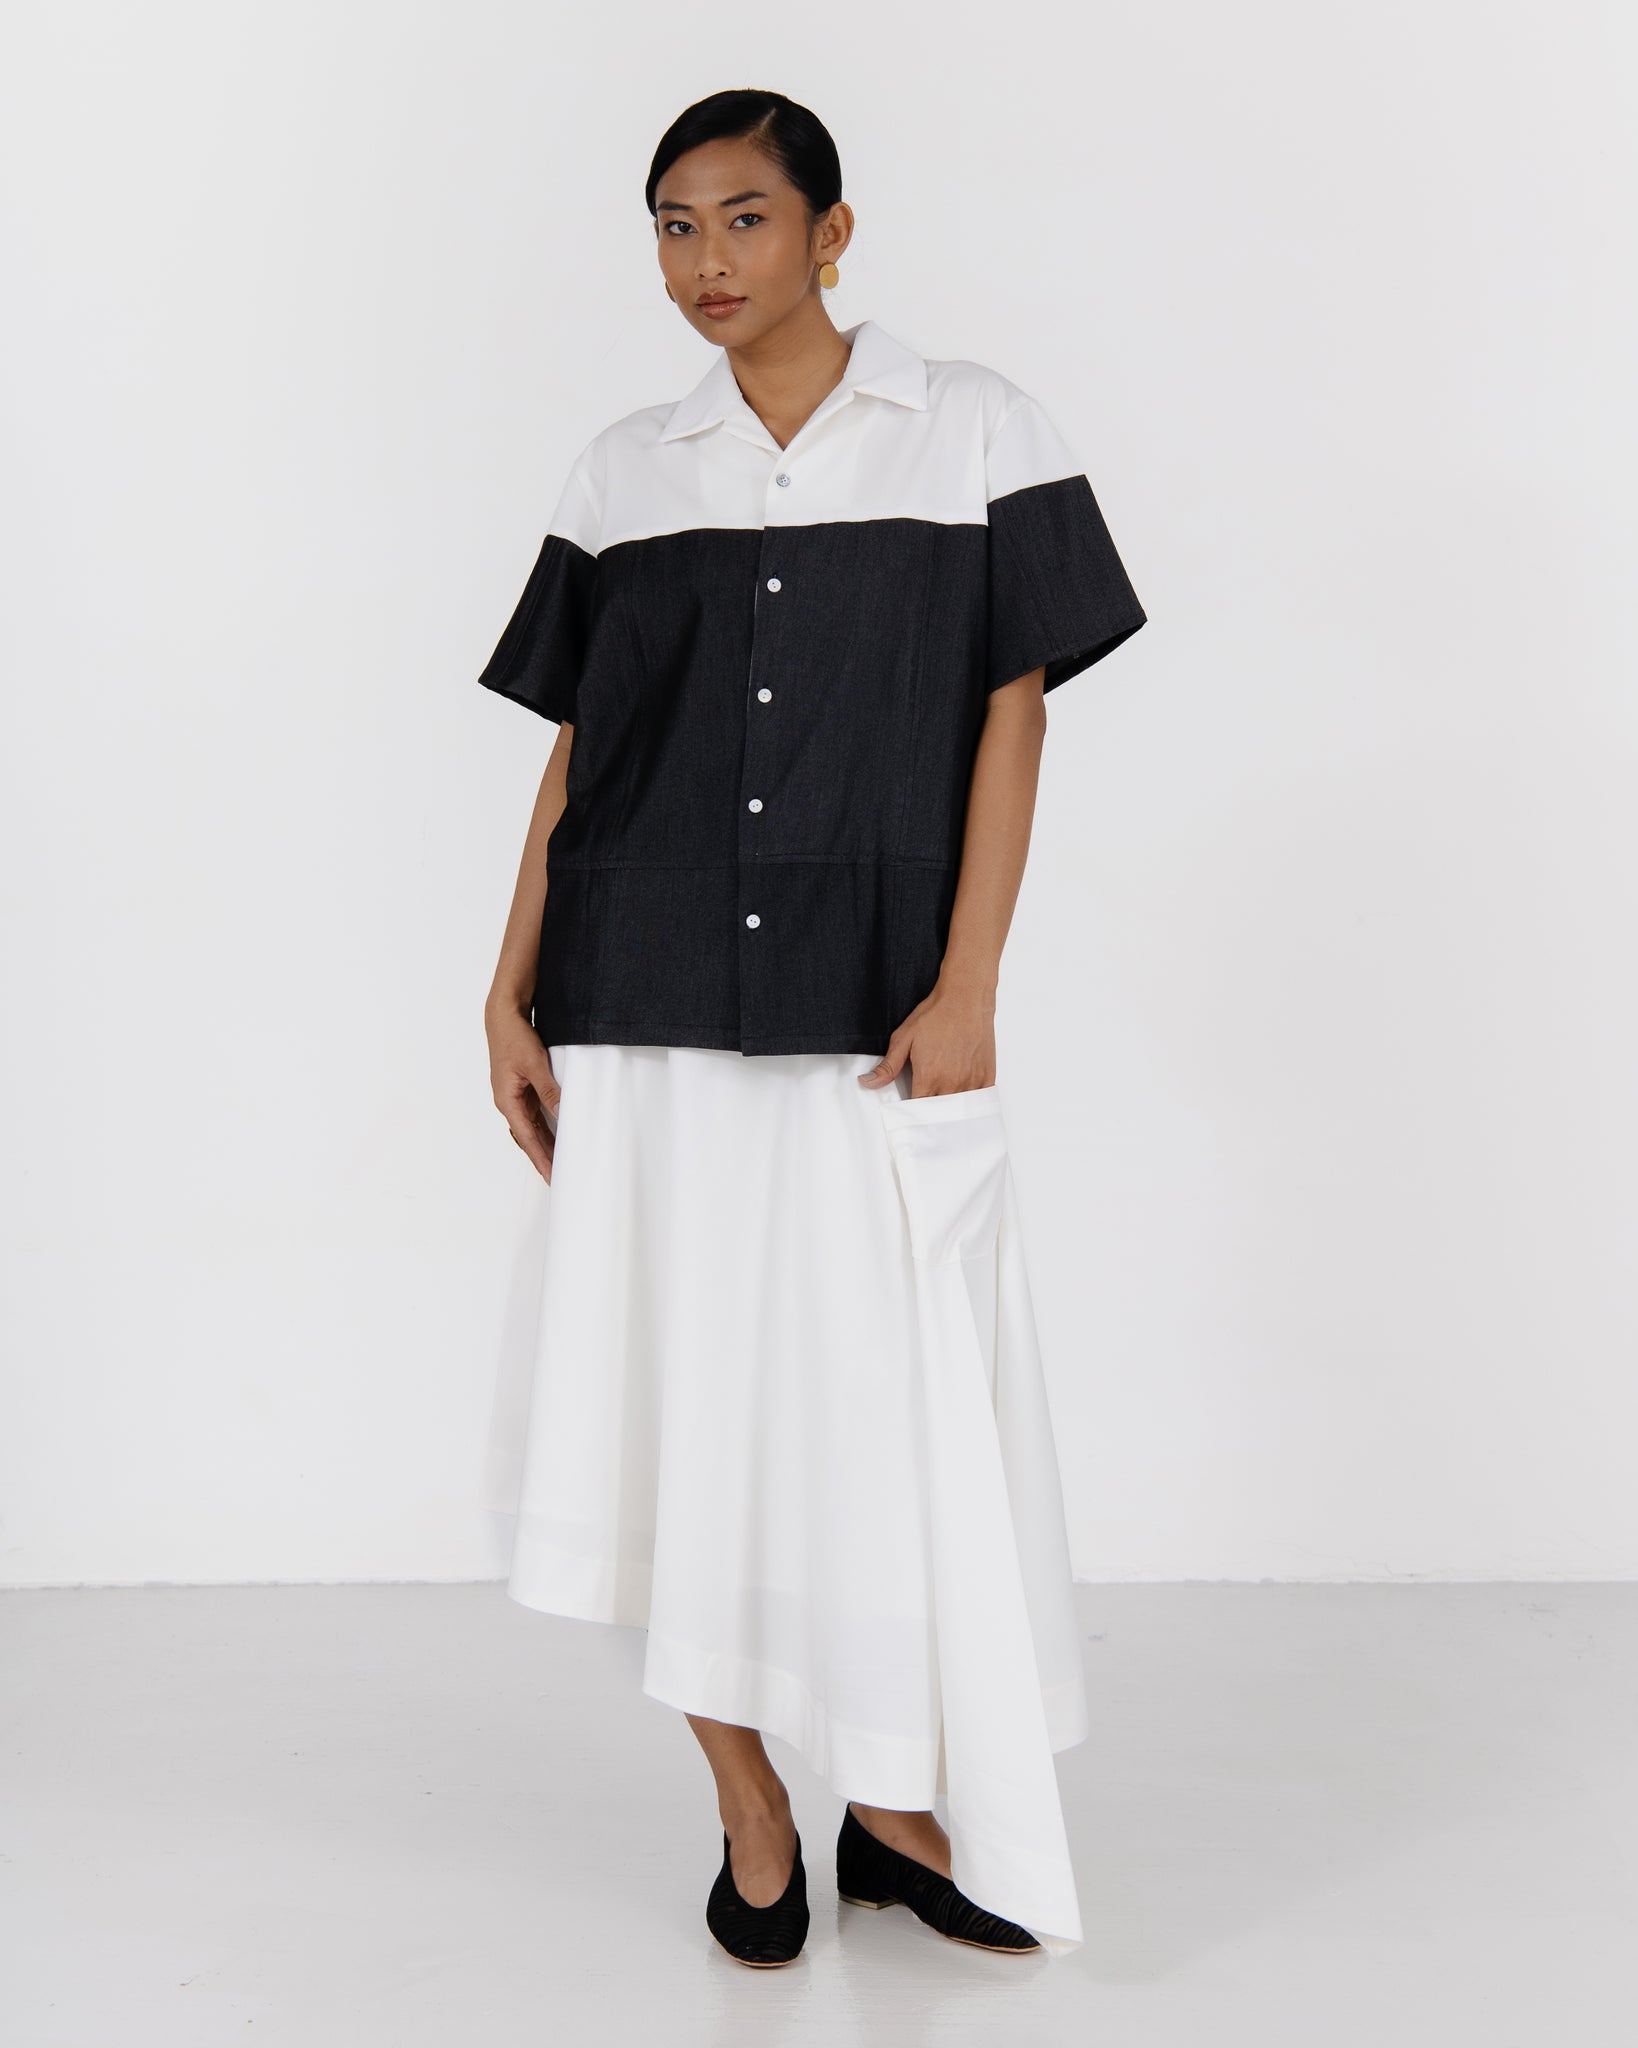 SFxNH Monochrome Shirt (Black/White)